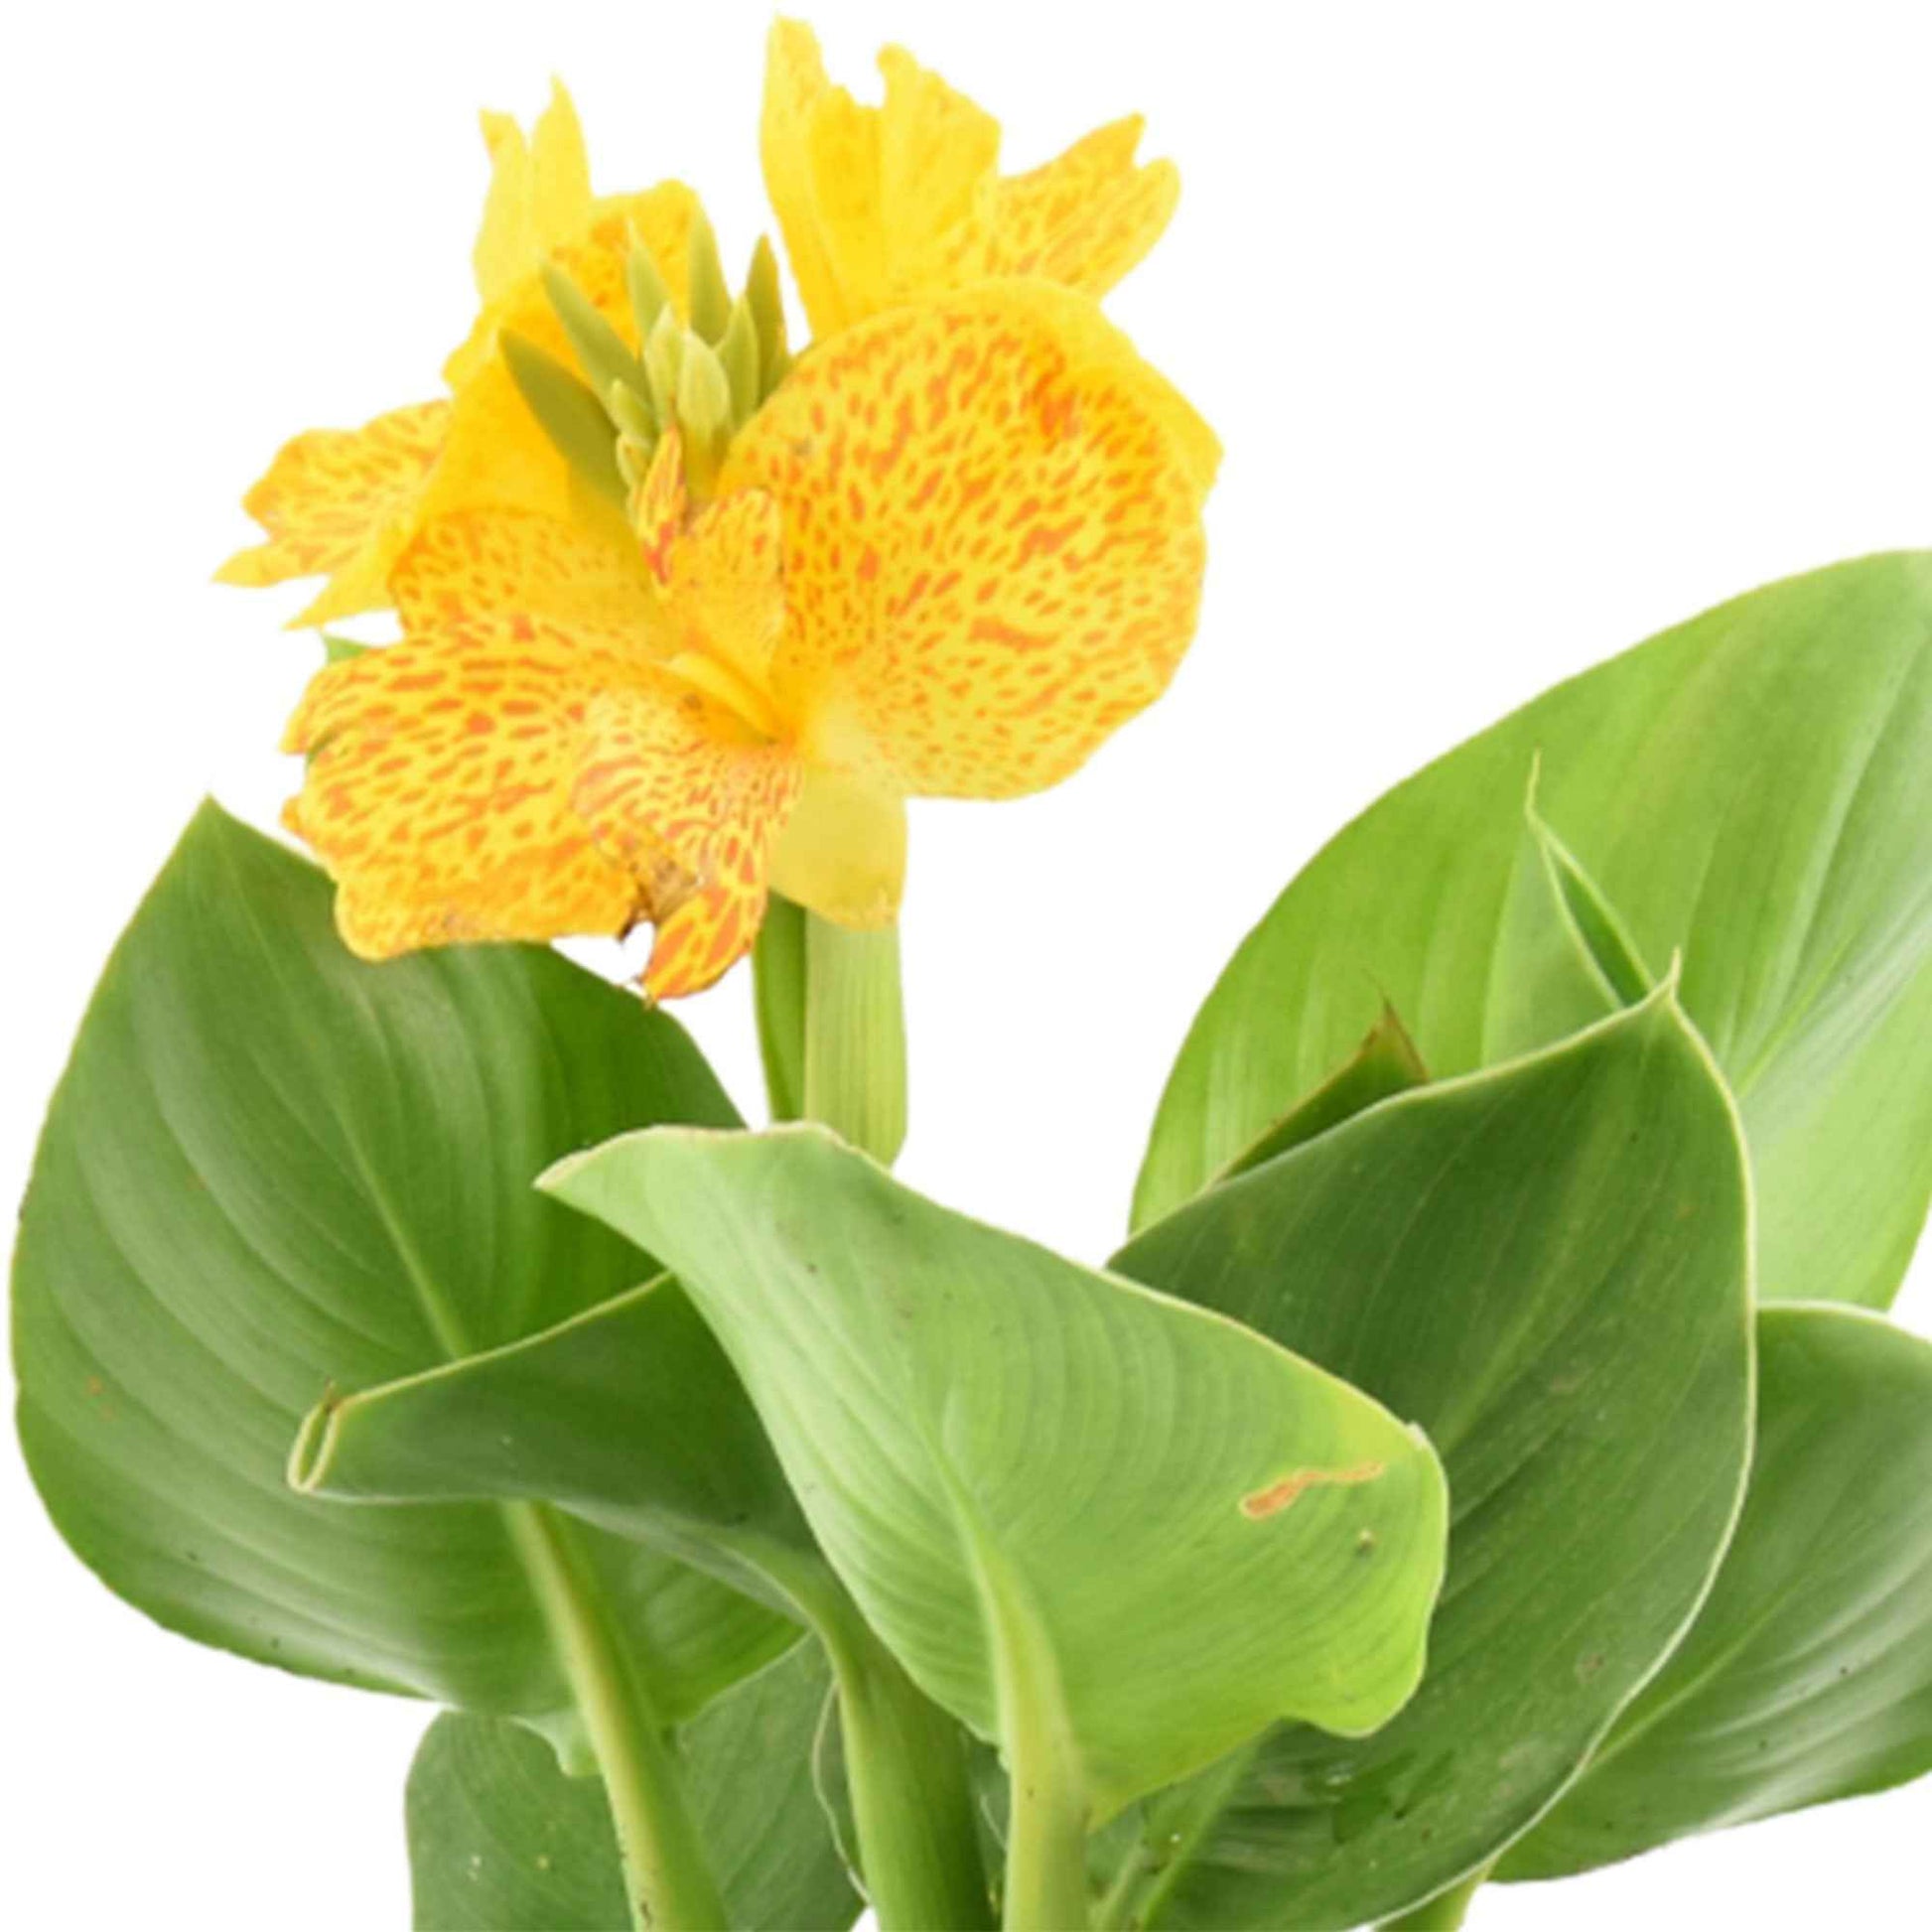 Blumenrohr Canna gelb - Sumpfpflanze, Uferpflanze - Naturteich